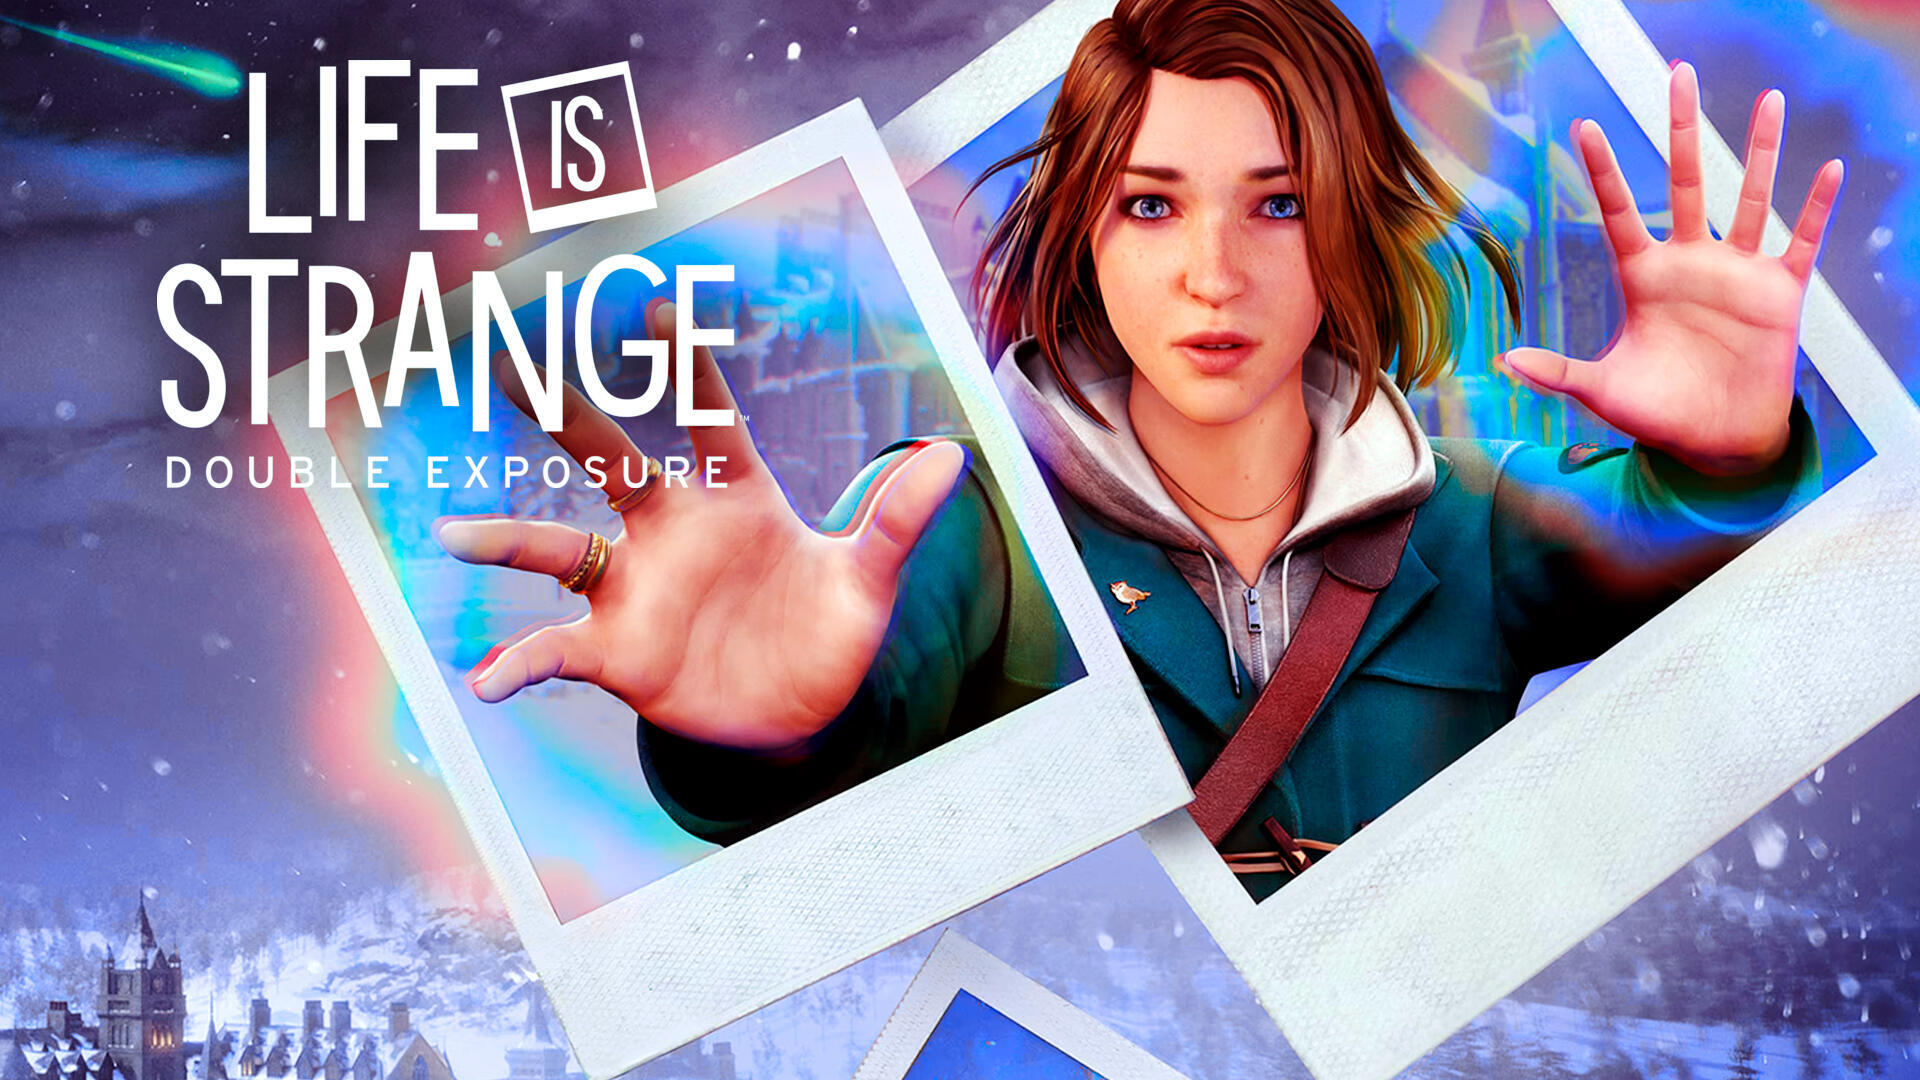 Misterio, drama y un retorno muy esperado: Así es Life is Strange: Double Exposure, la secuela del juego original